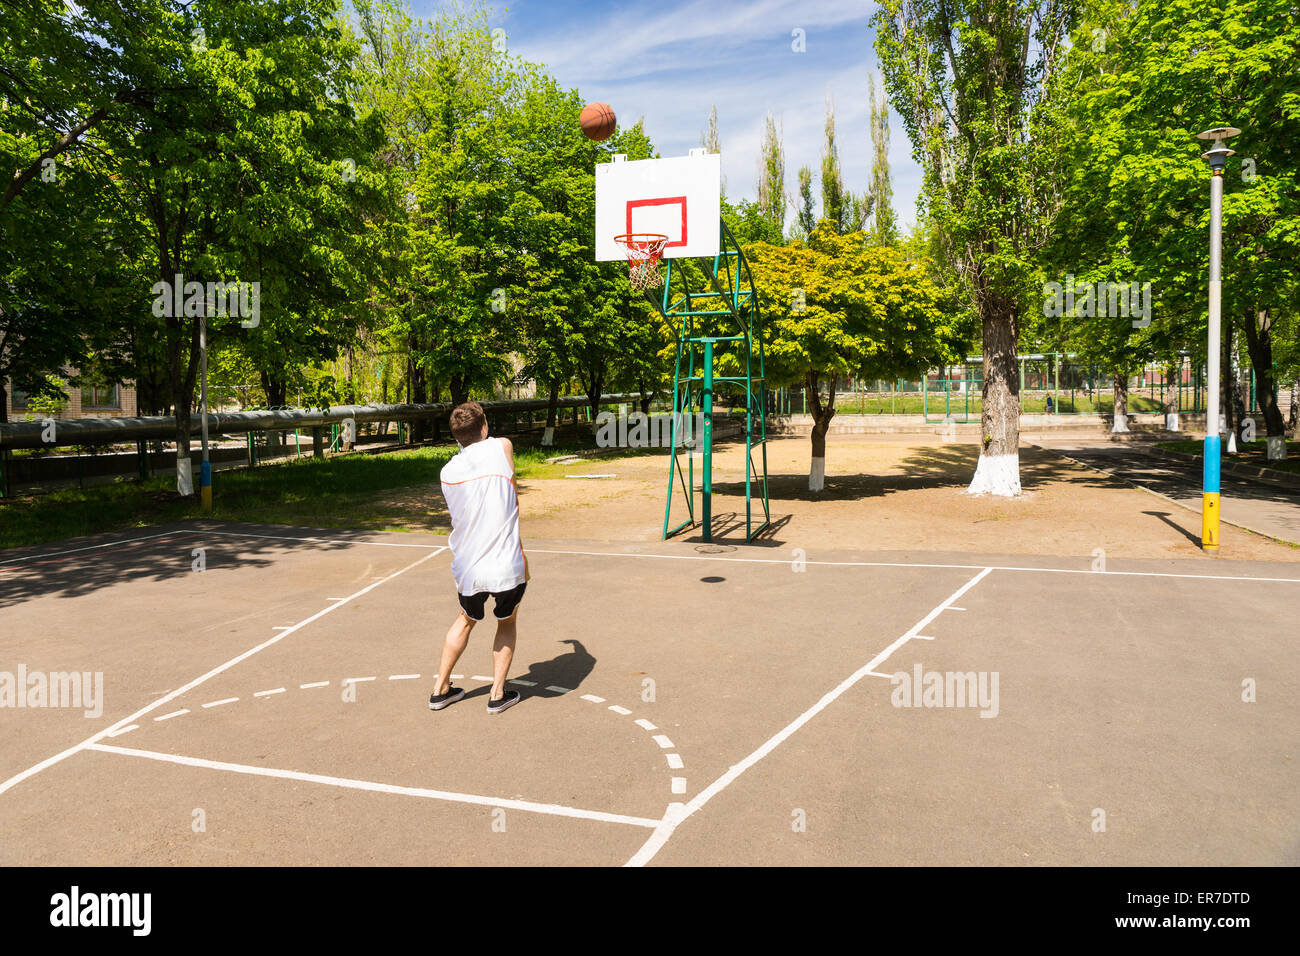 Jeune homme athlétique en tenant tourné sur panier du haut de la clé sur un terrain de basket-ball dans le parc verdoyant Banque D'Images